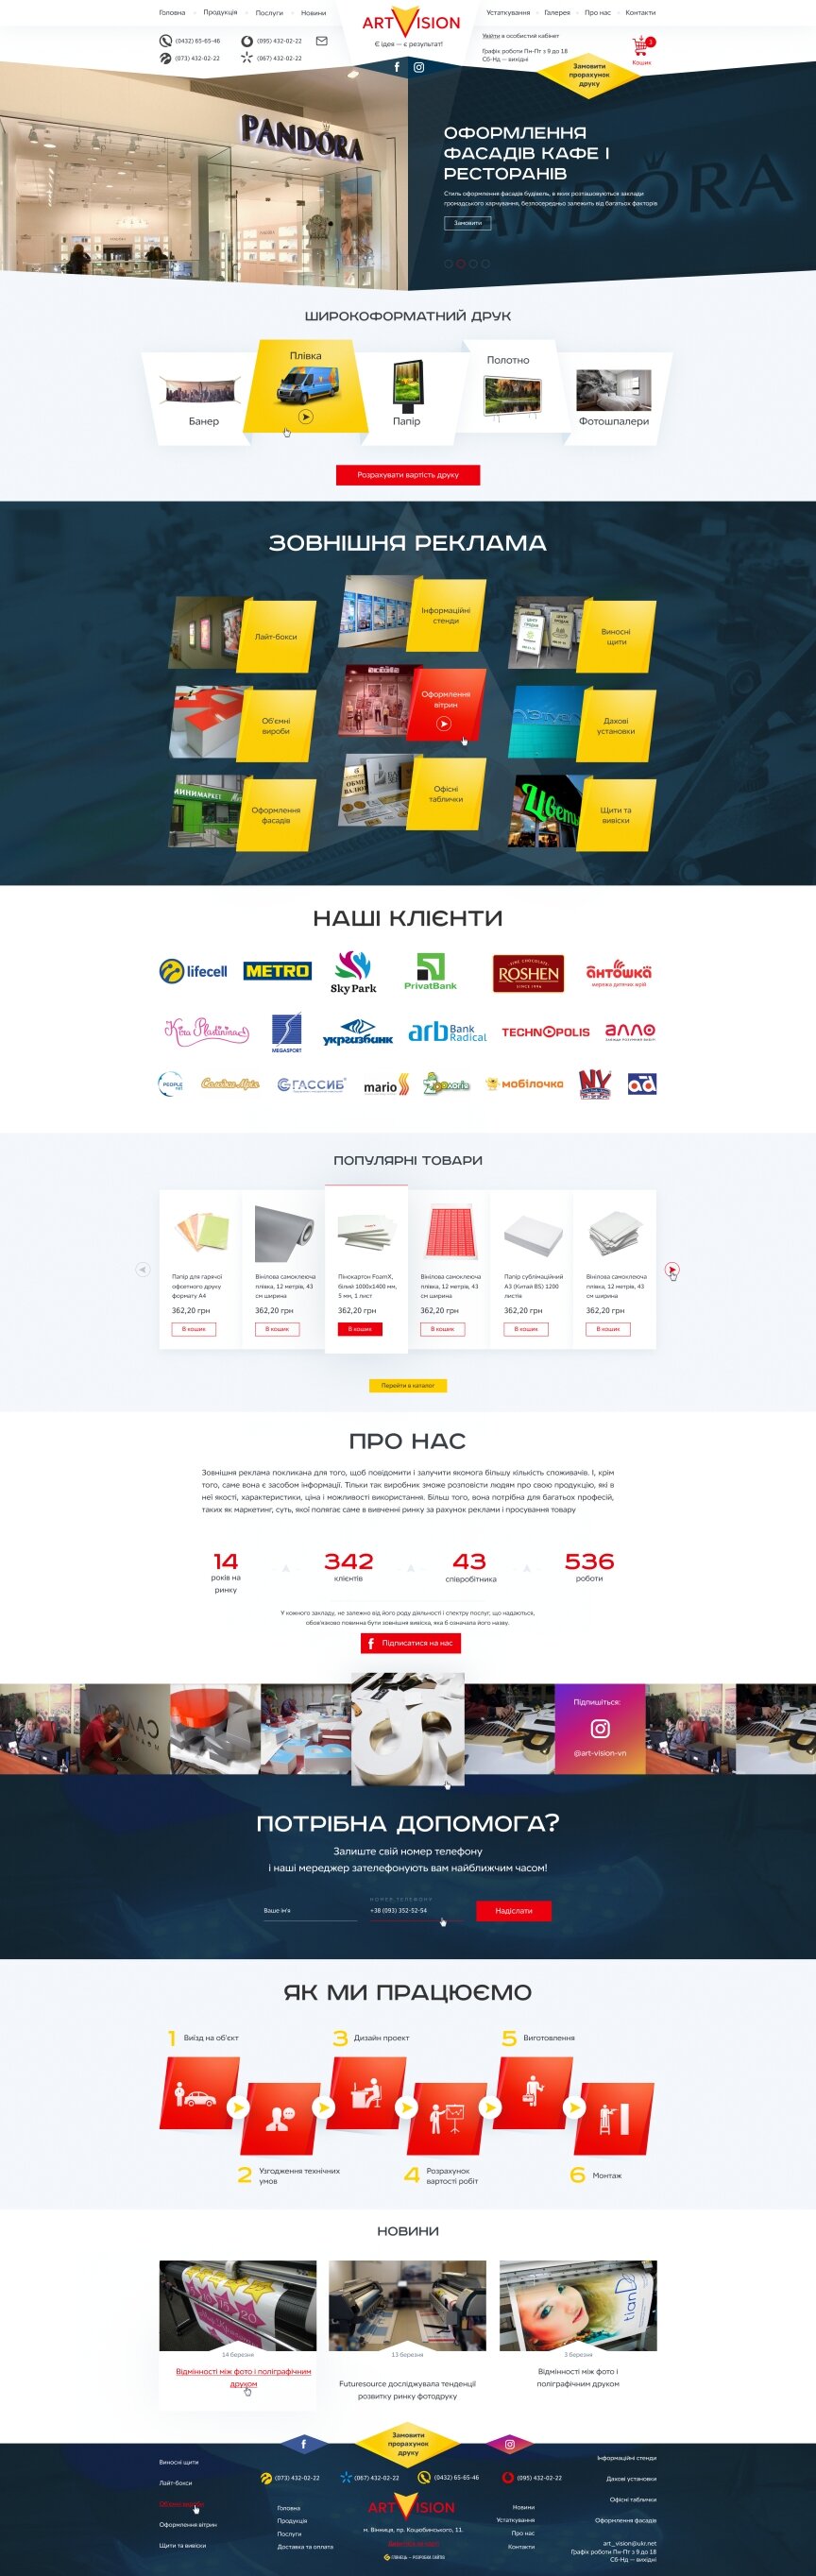 дизайн внутрішніх сторінкок на тему Рекламні агентства, веб-студії, хостинг-компанії, IT — Сайт компанії Арт Віжн 0